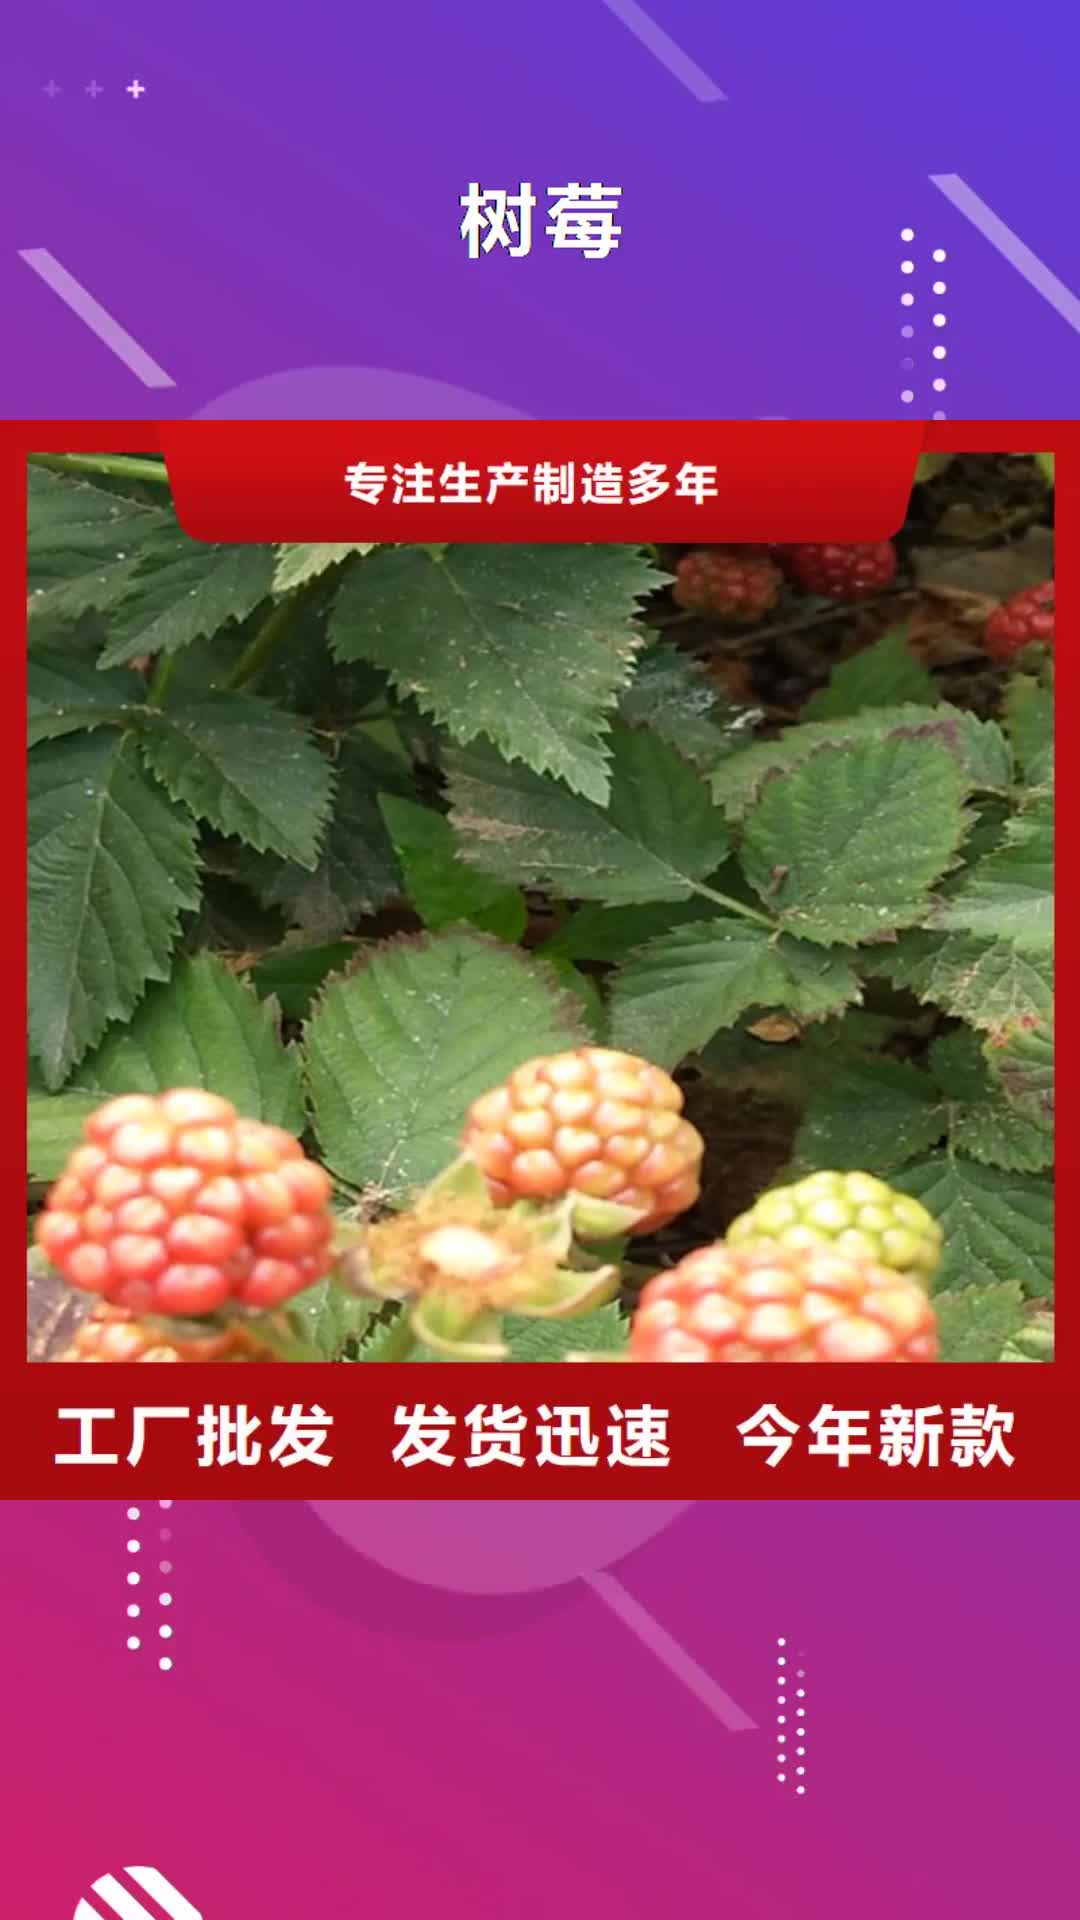 佳木斯 树莓,【无花果苗】库存充足